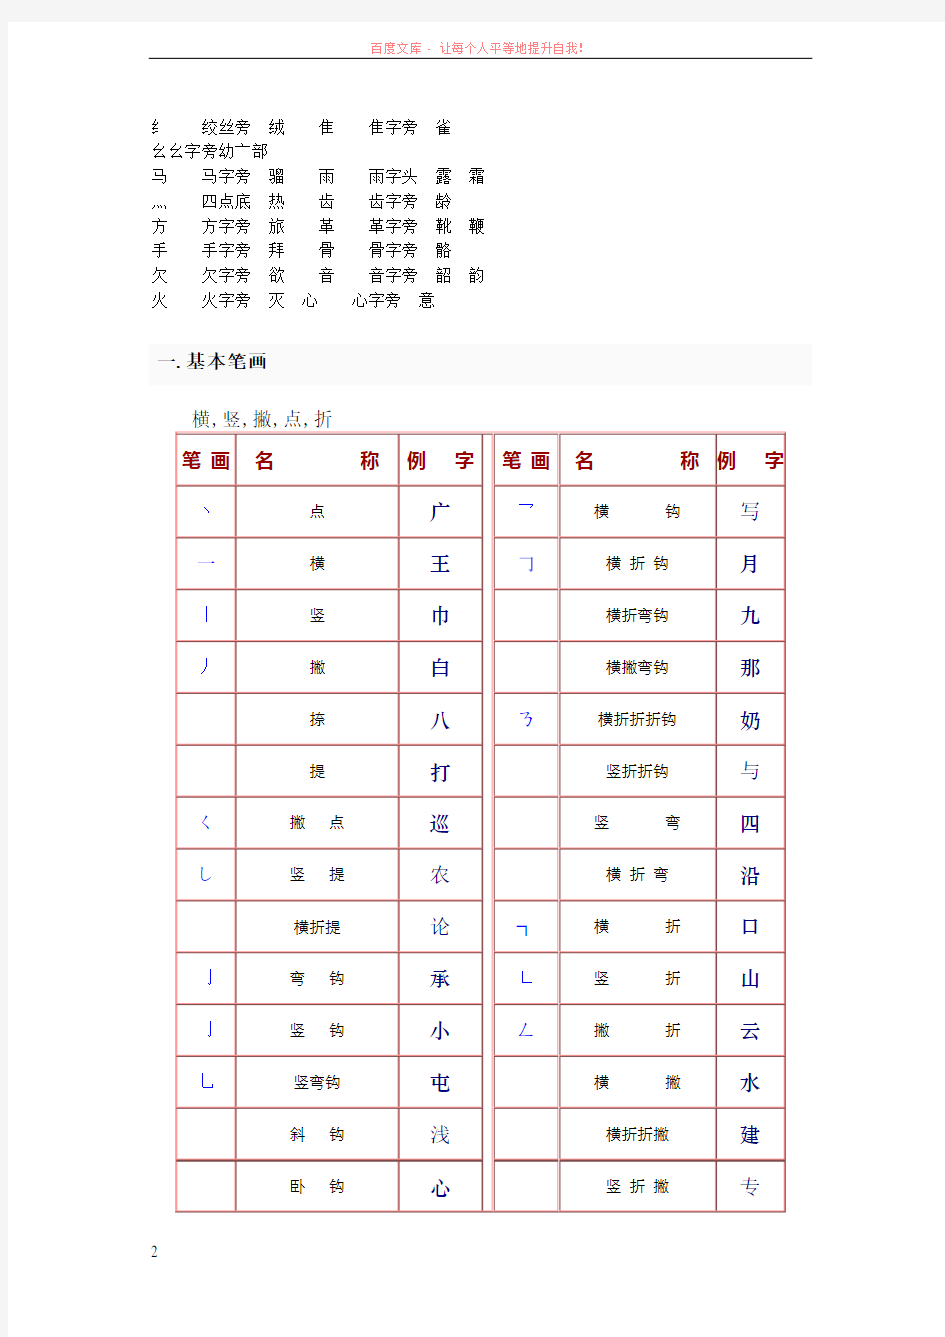 中国汉字的常见偏旁部首名称和基本笔画 (1)